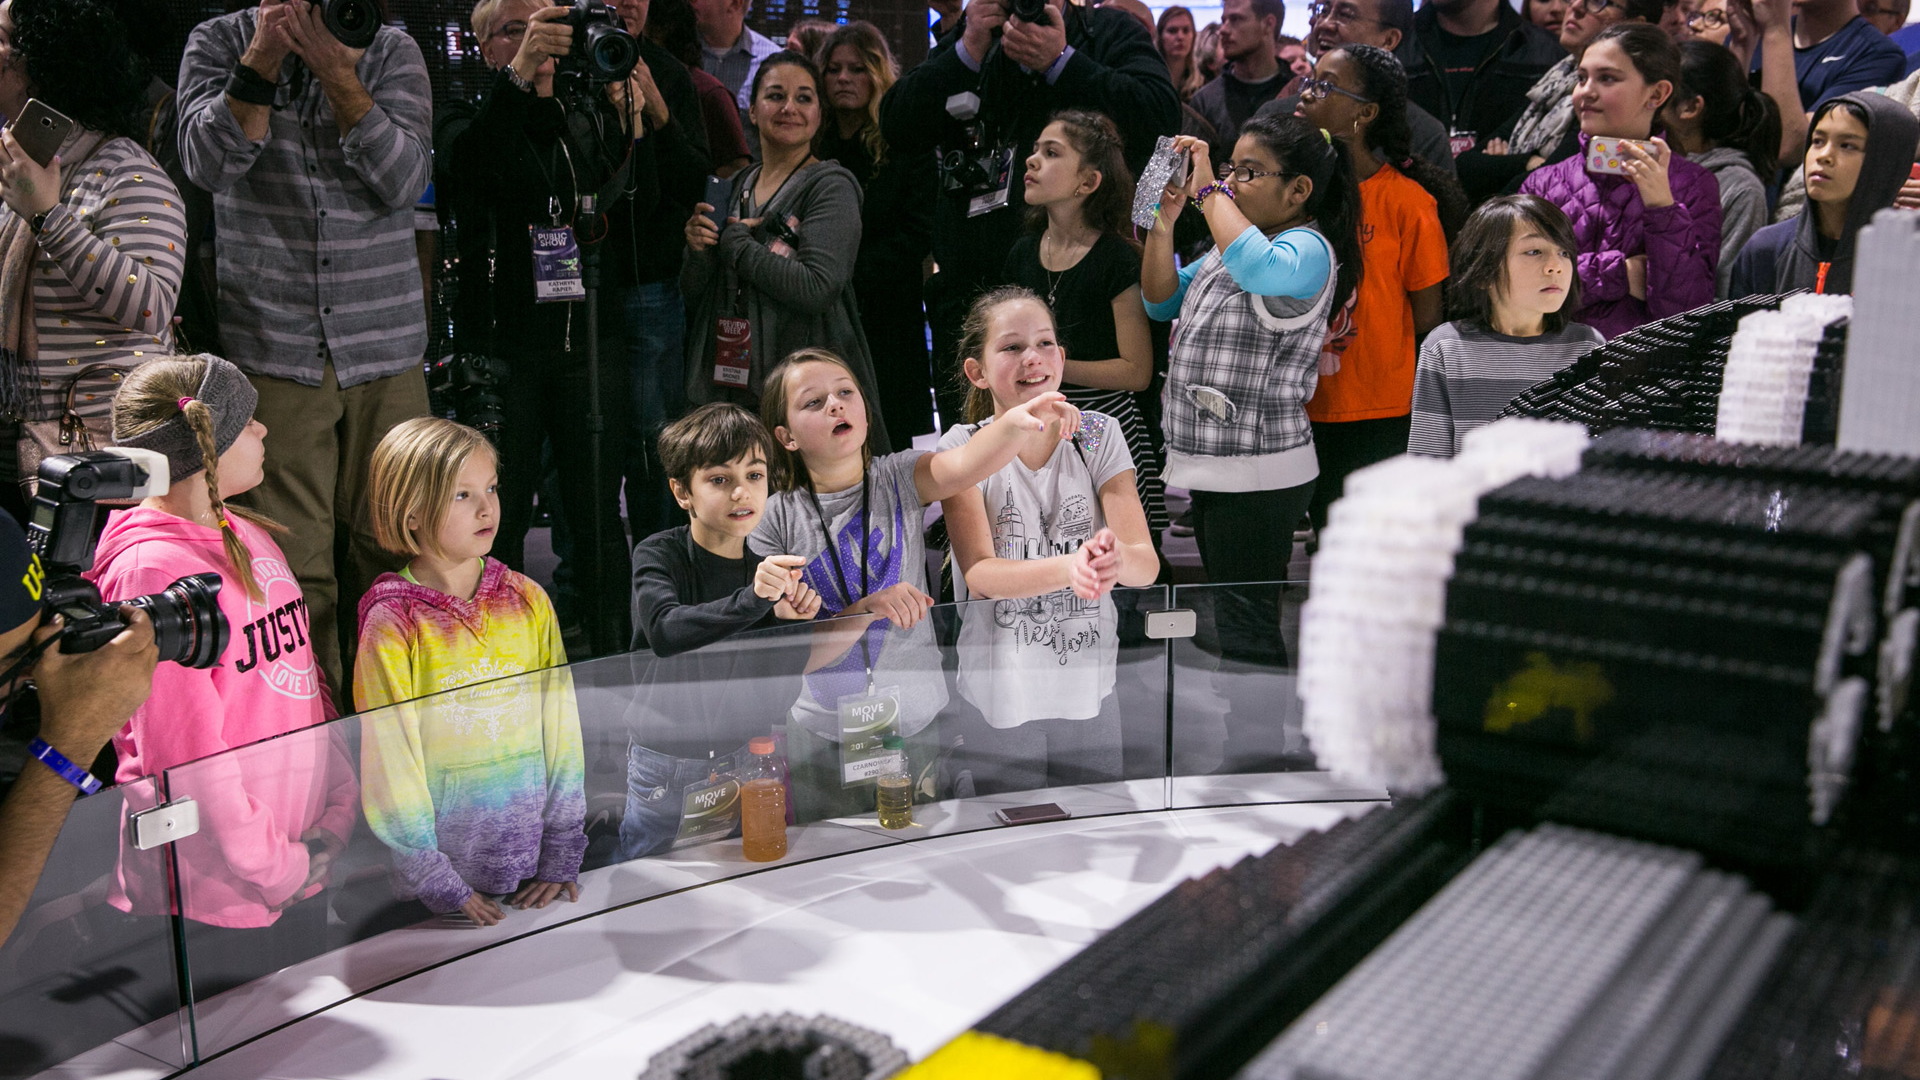 Life-size Lego Batmobile built by Chevrolet, 2017 Detroit auto show